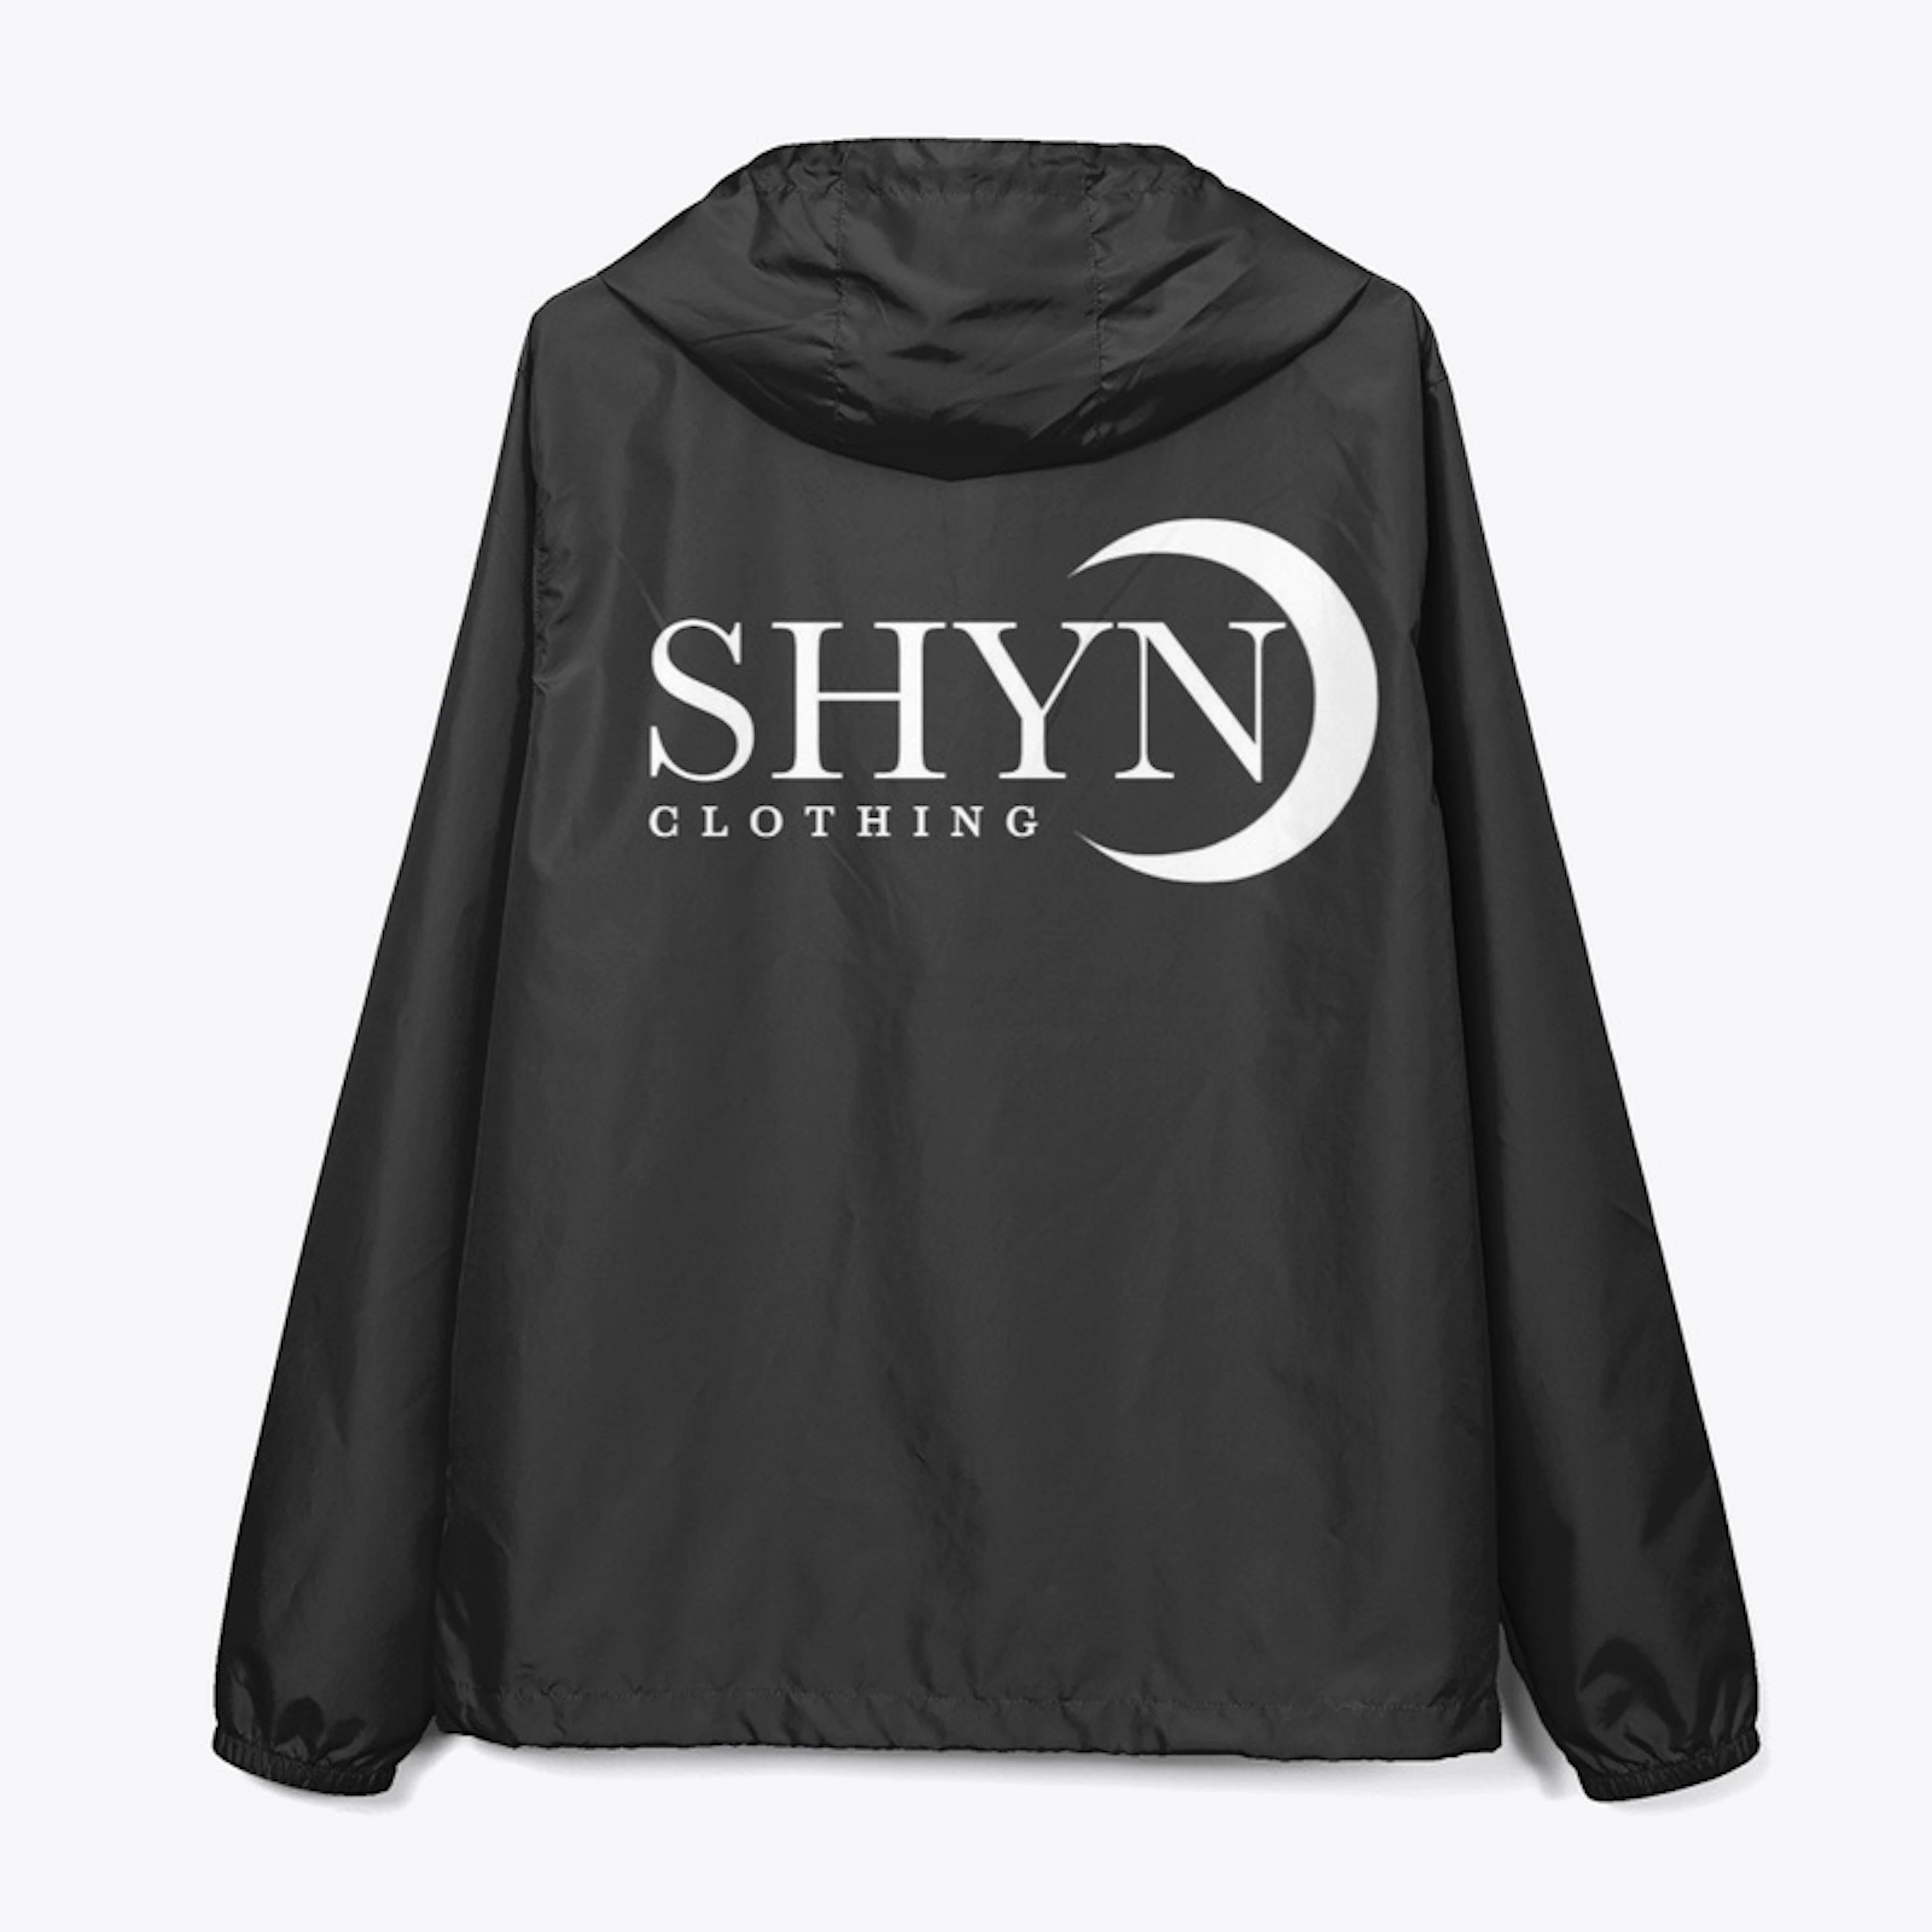 Shyn Clothing Jackets